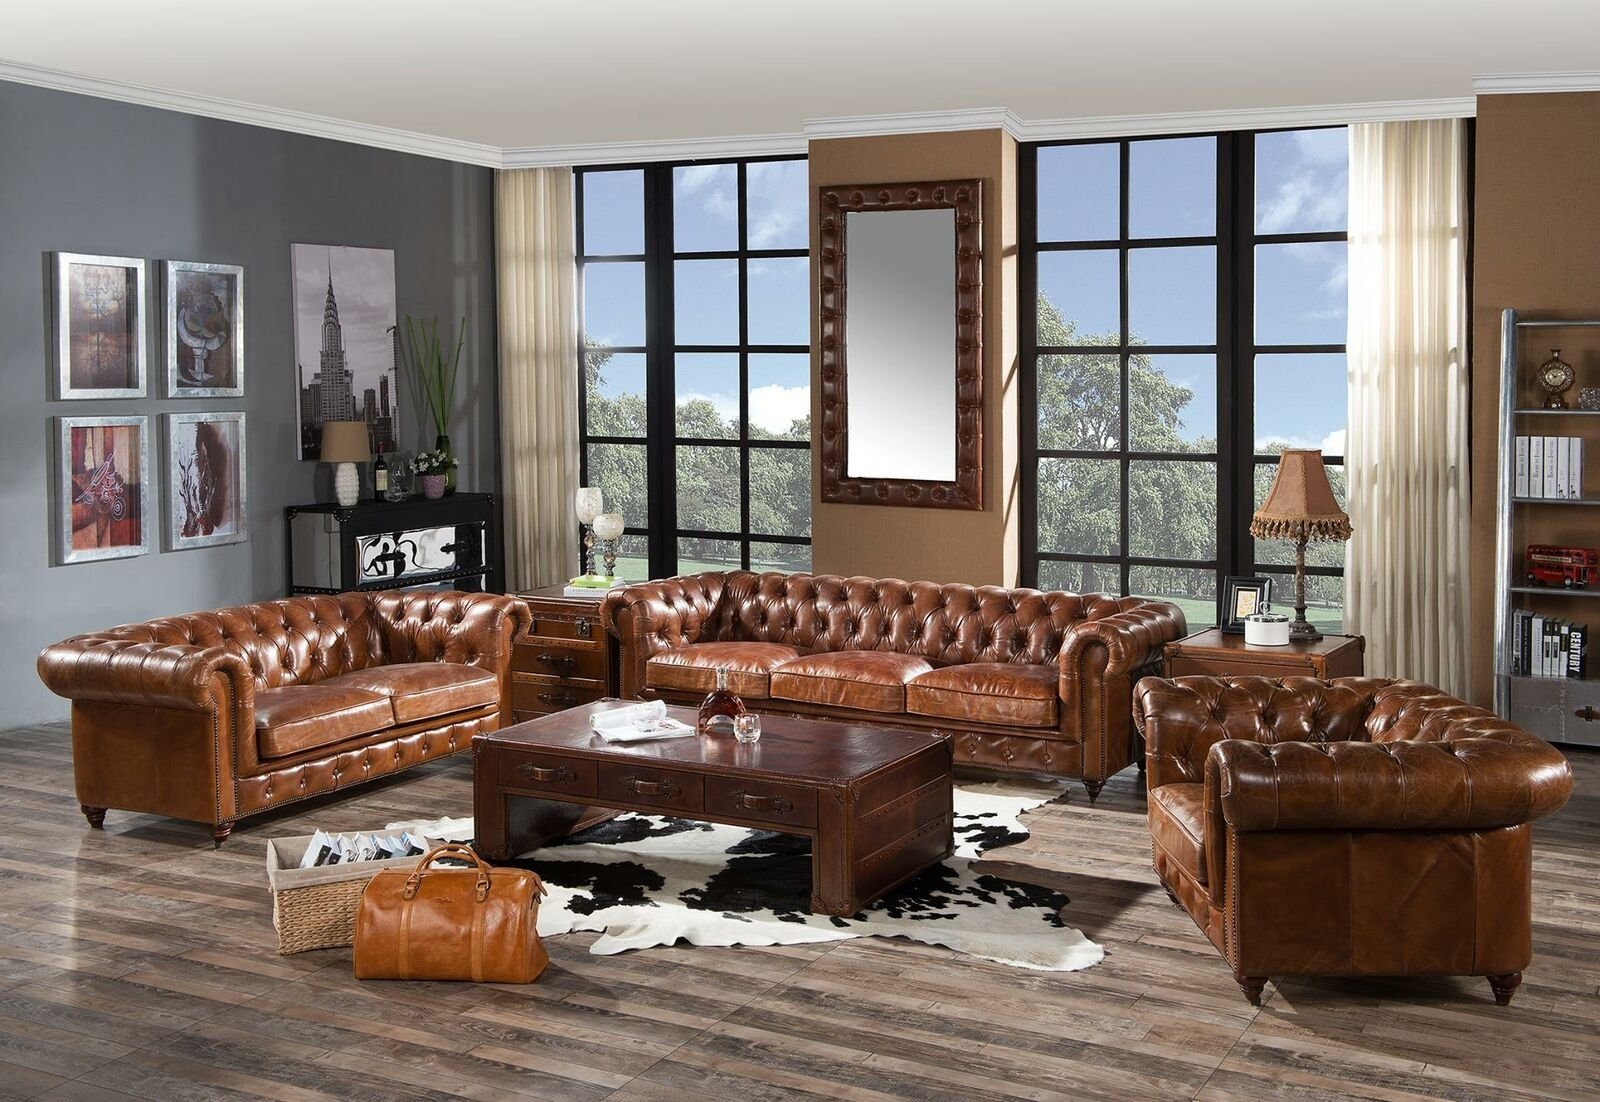 Neuer Made JVmoebel in Sofa Sofagarnitur Set, 3+2+1 Braune Sitzer luxus Europe Chesterfield